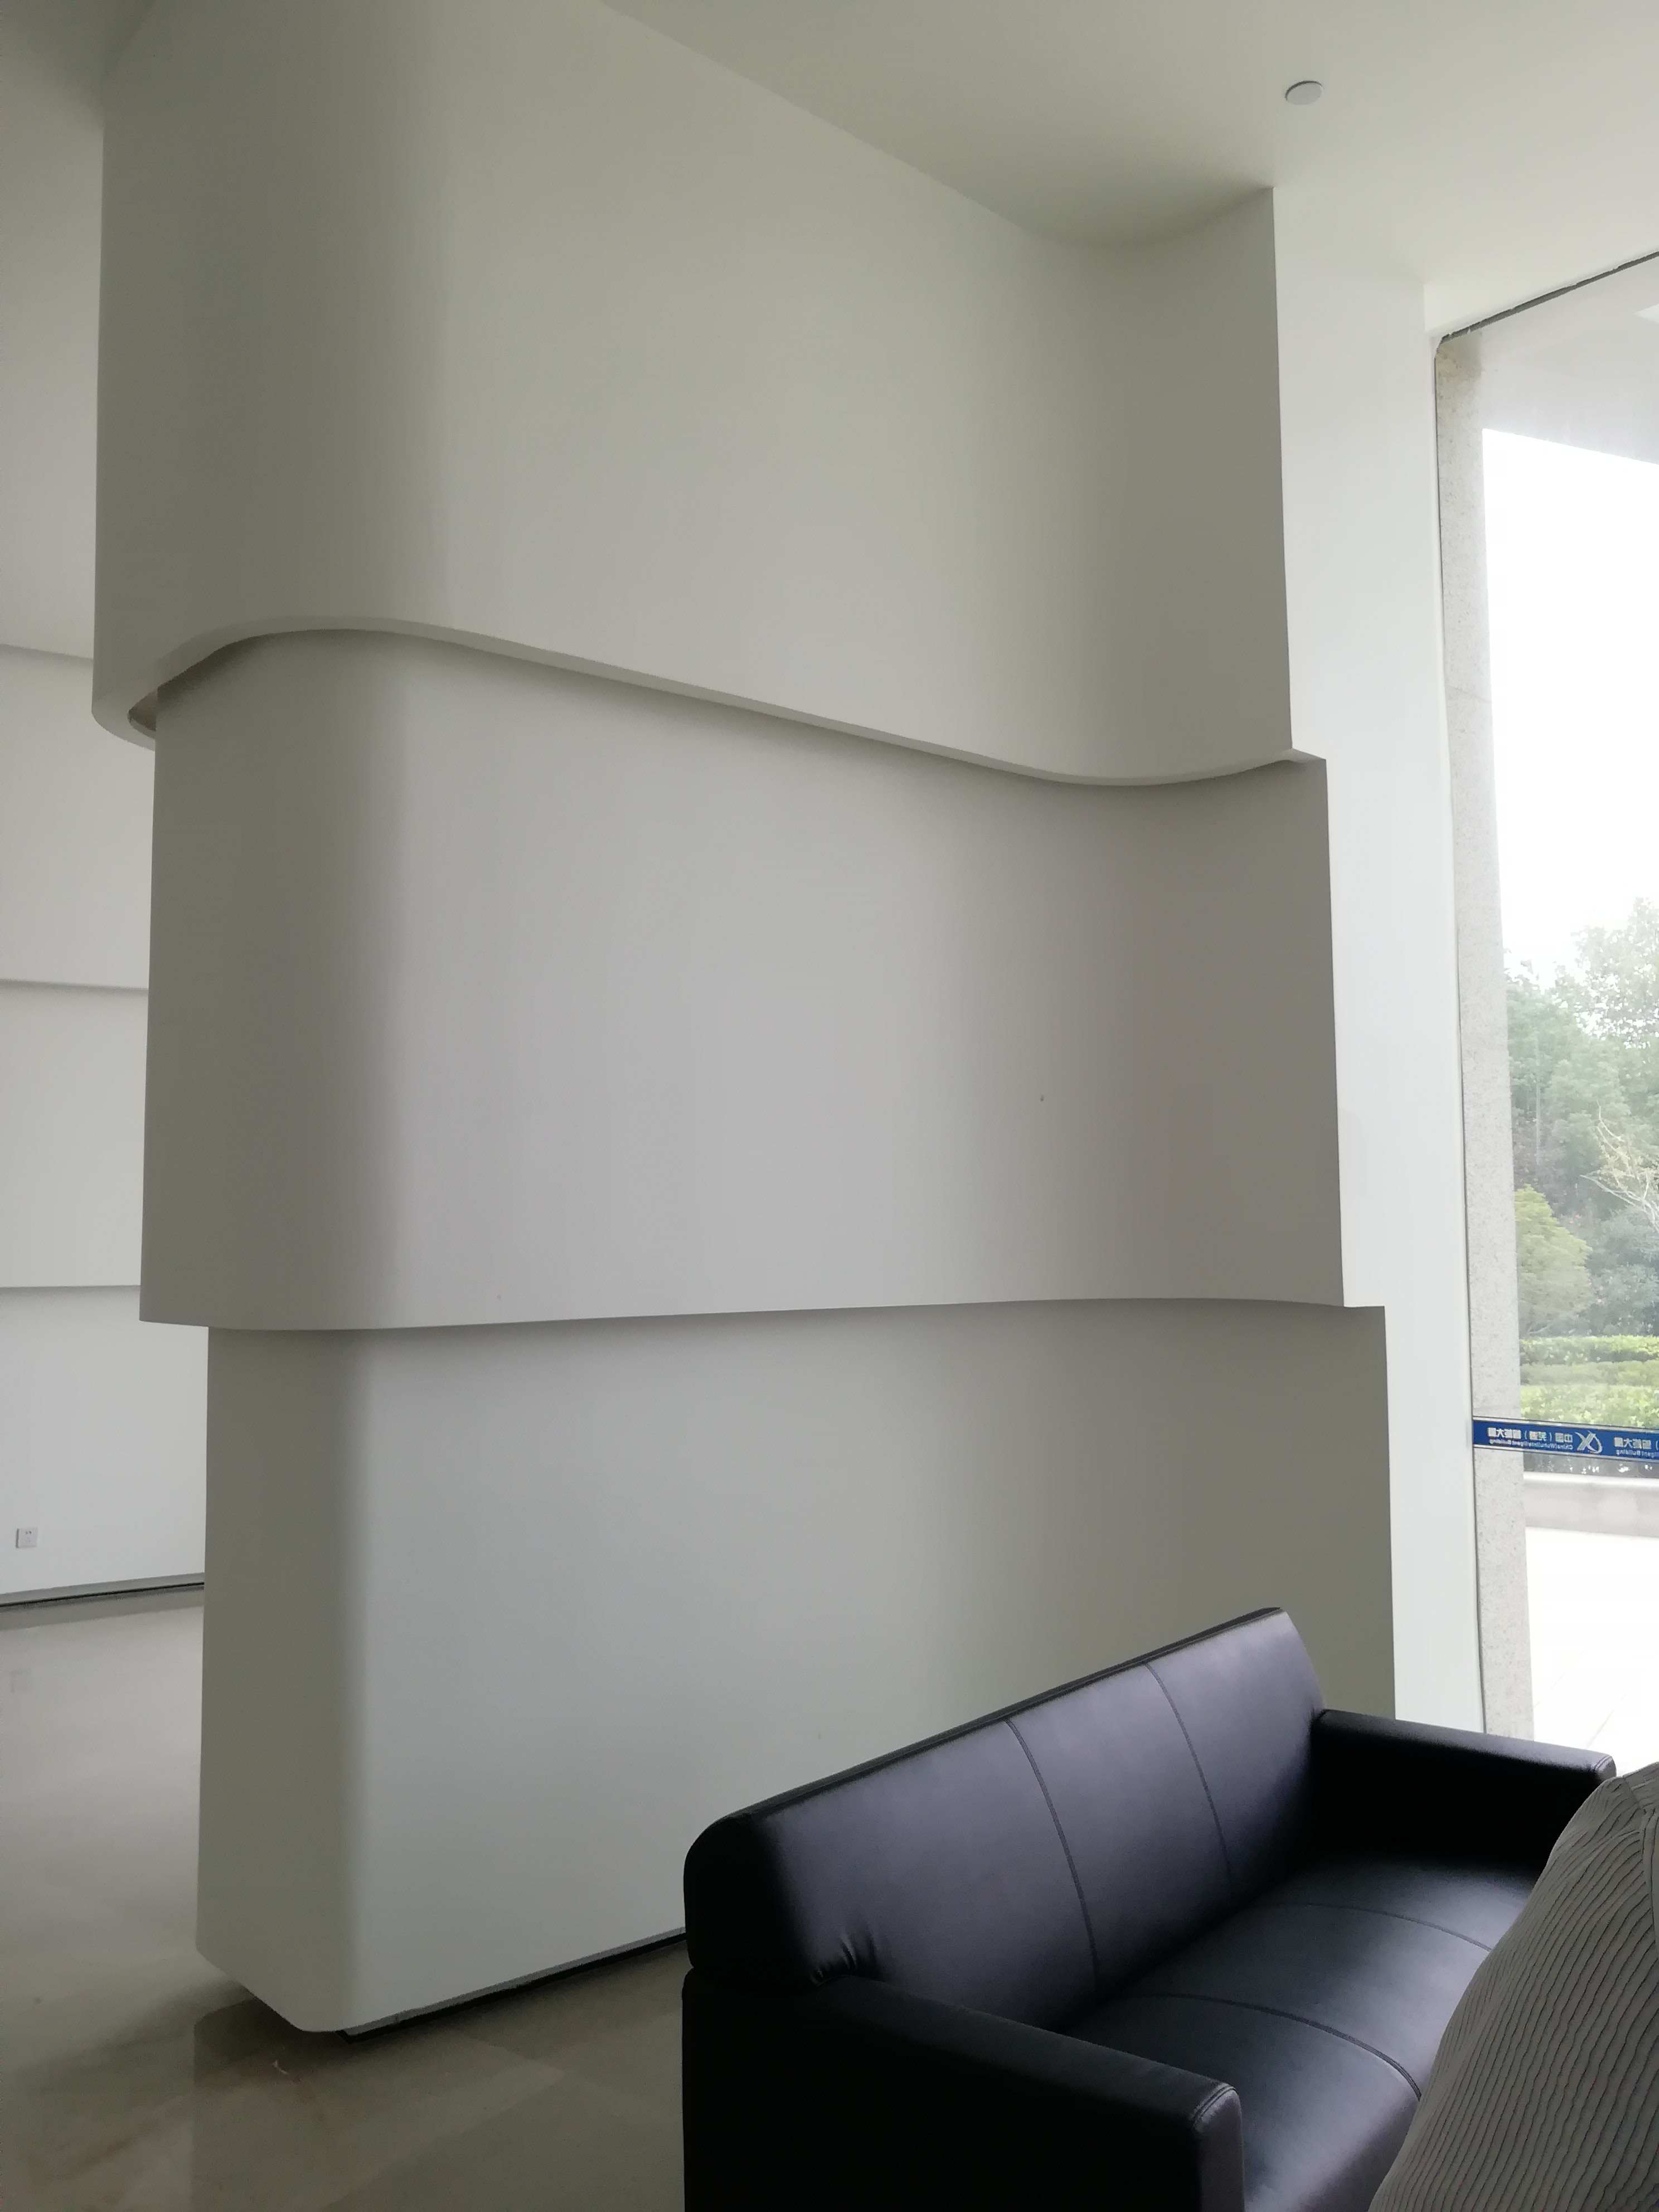 科大讯飞股份有限公司安徽总部大楼grg墙面艺术造型装饰工程